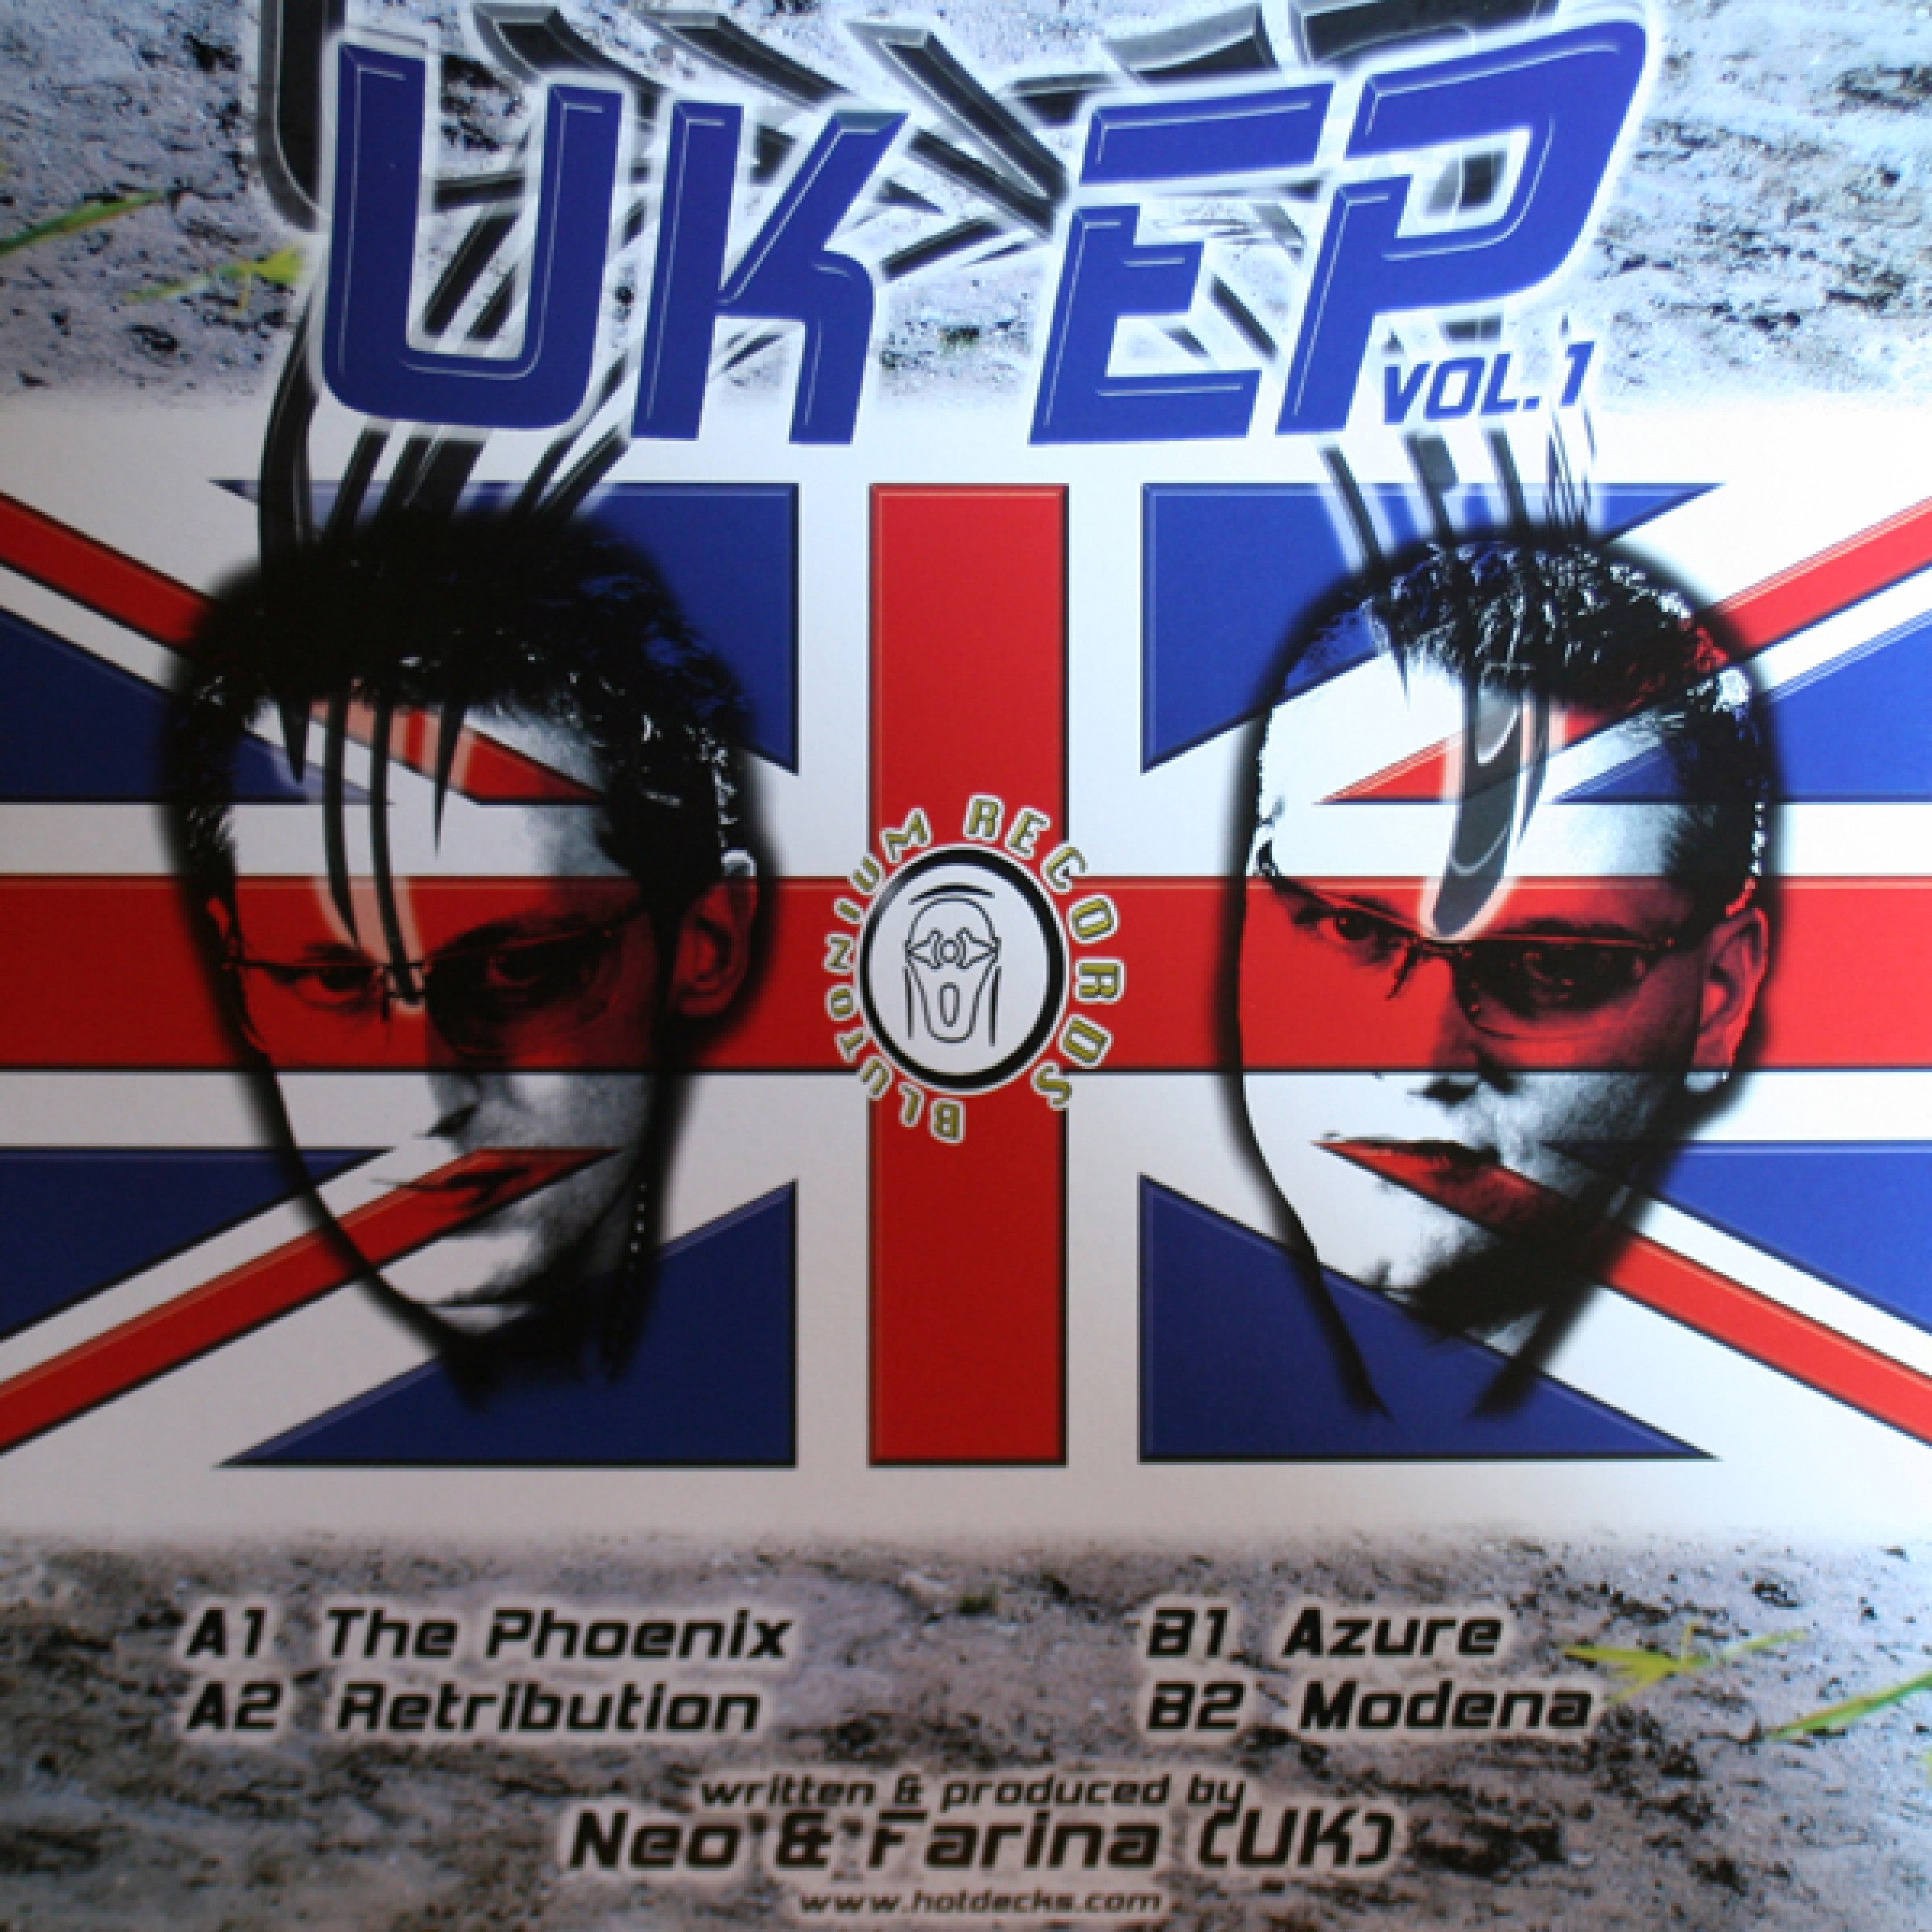 UK EP Vol. 1